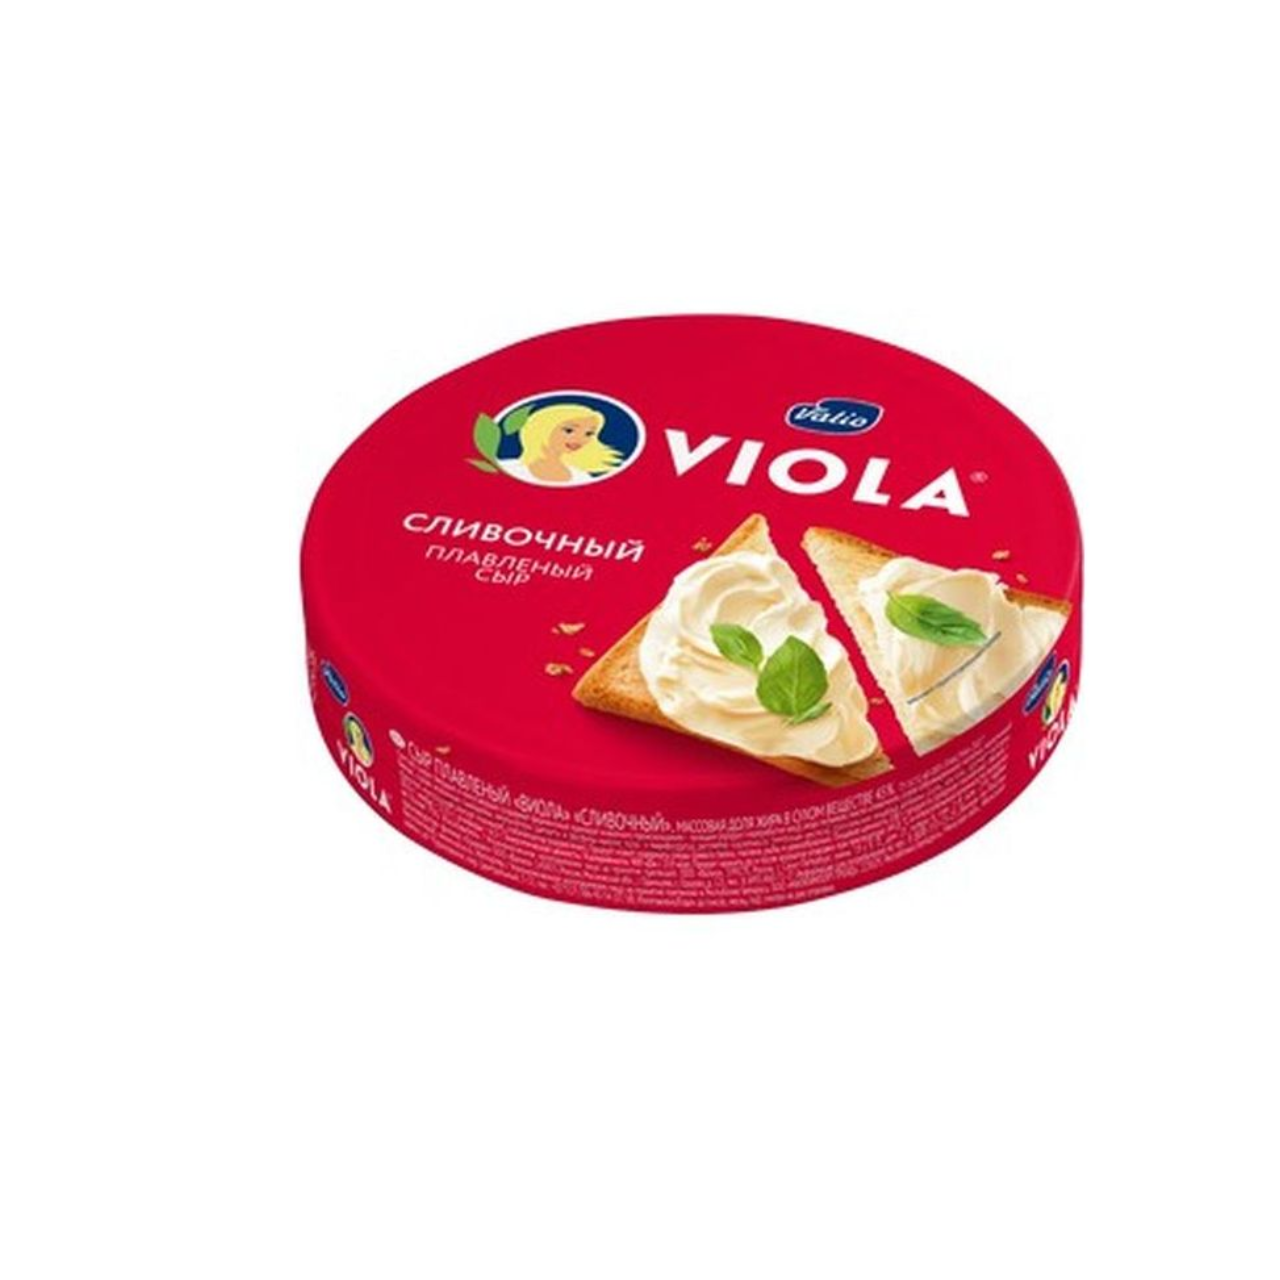 Сыр Виола Валио плав 50% 130 г круг сливочный